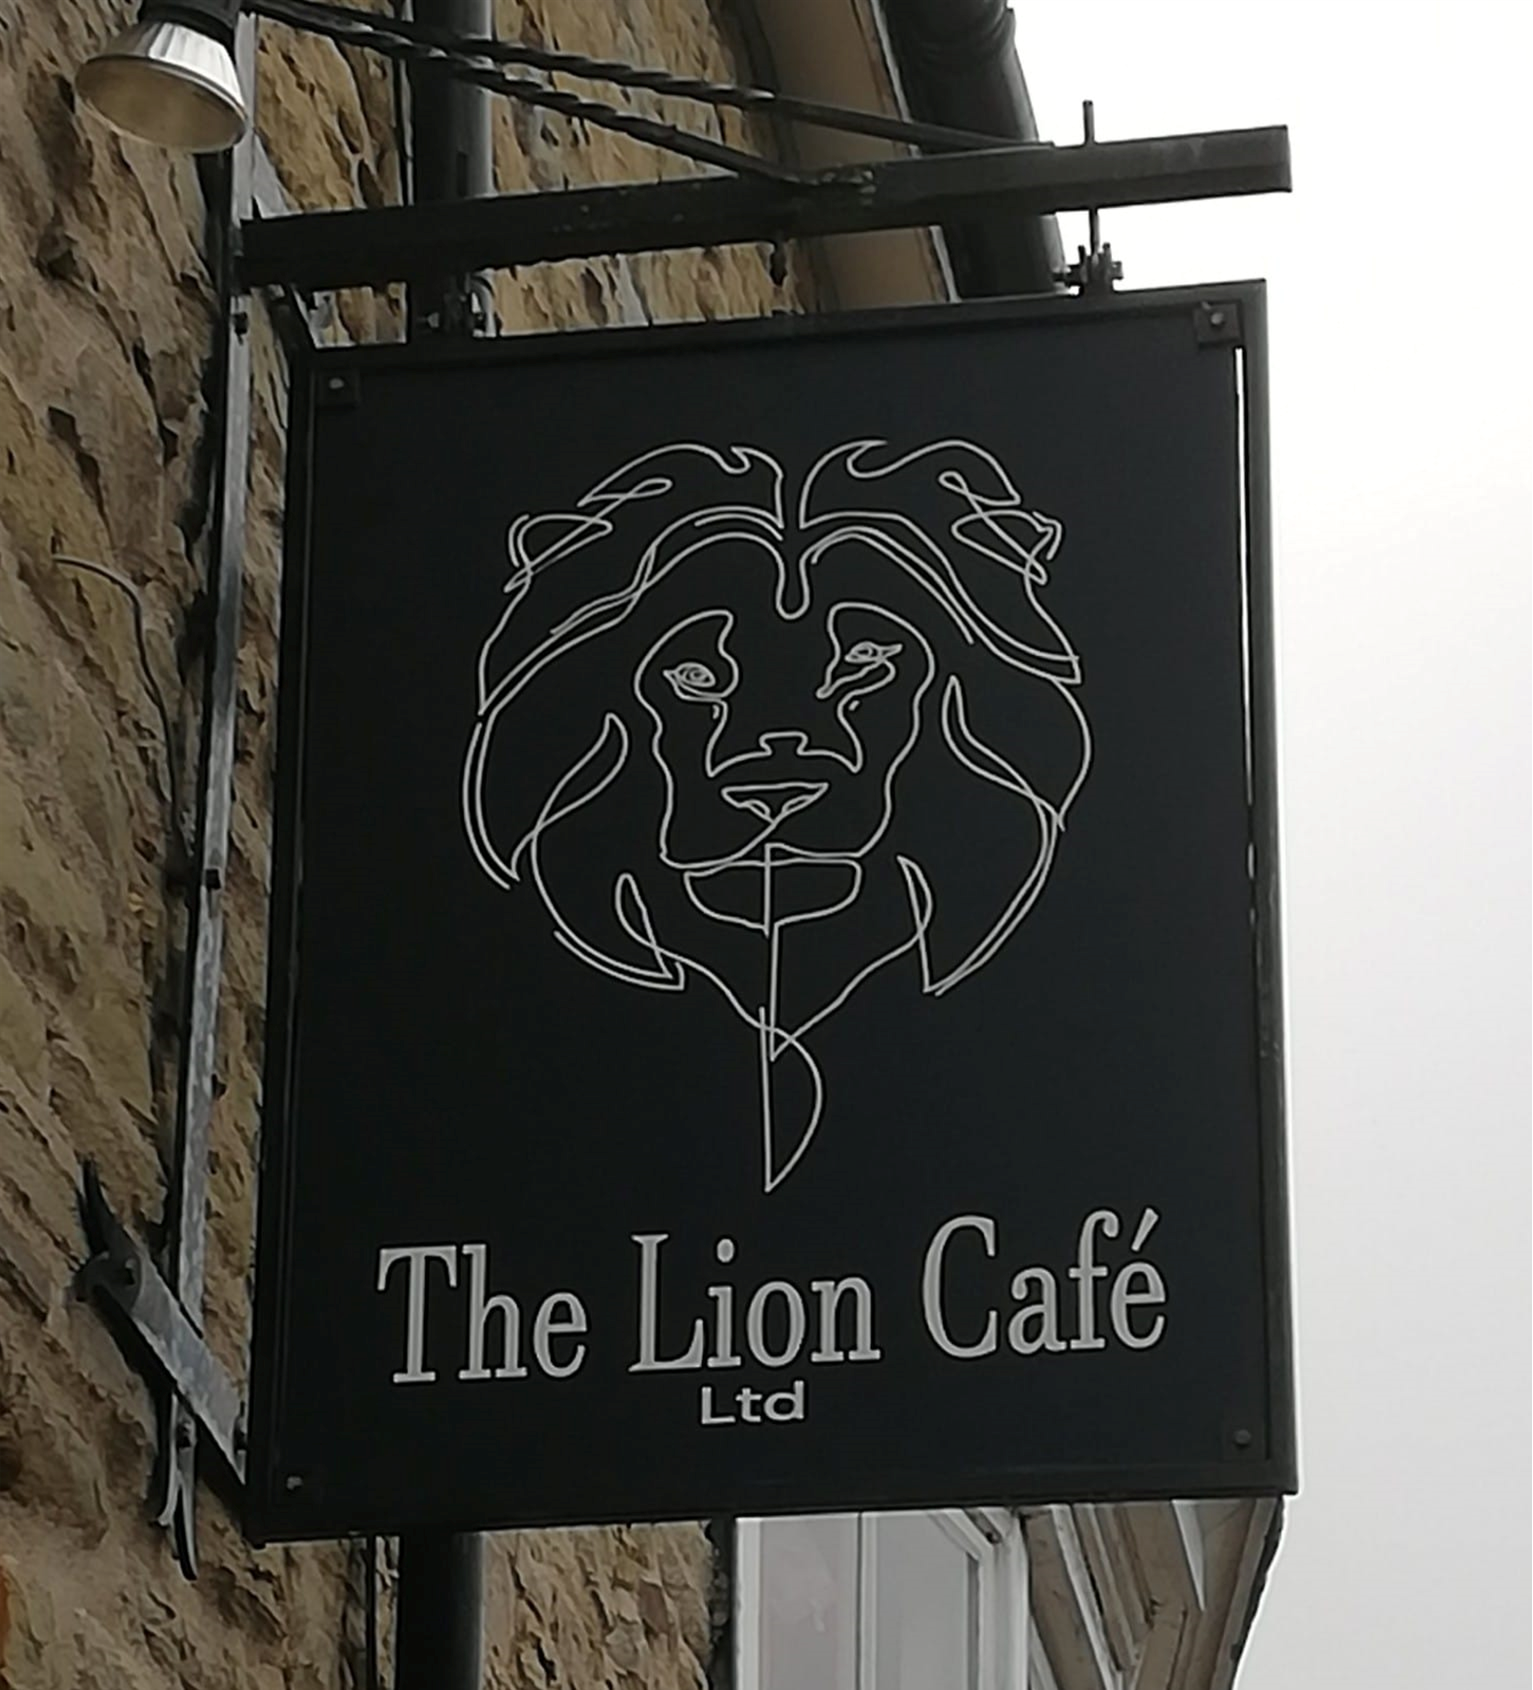 The black and white Lion Café exterior sign